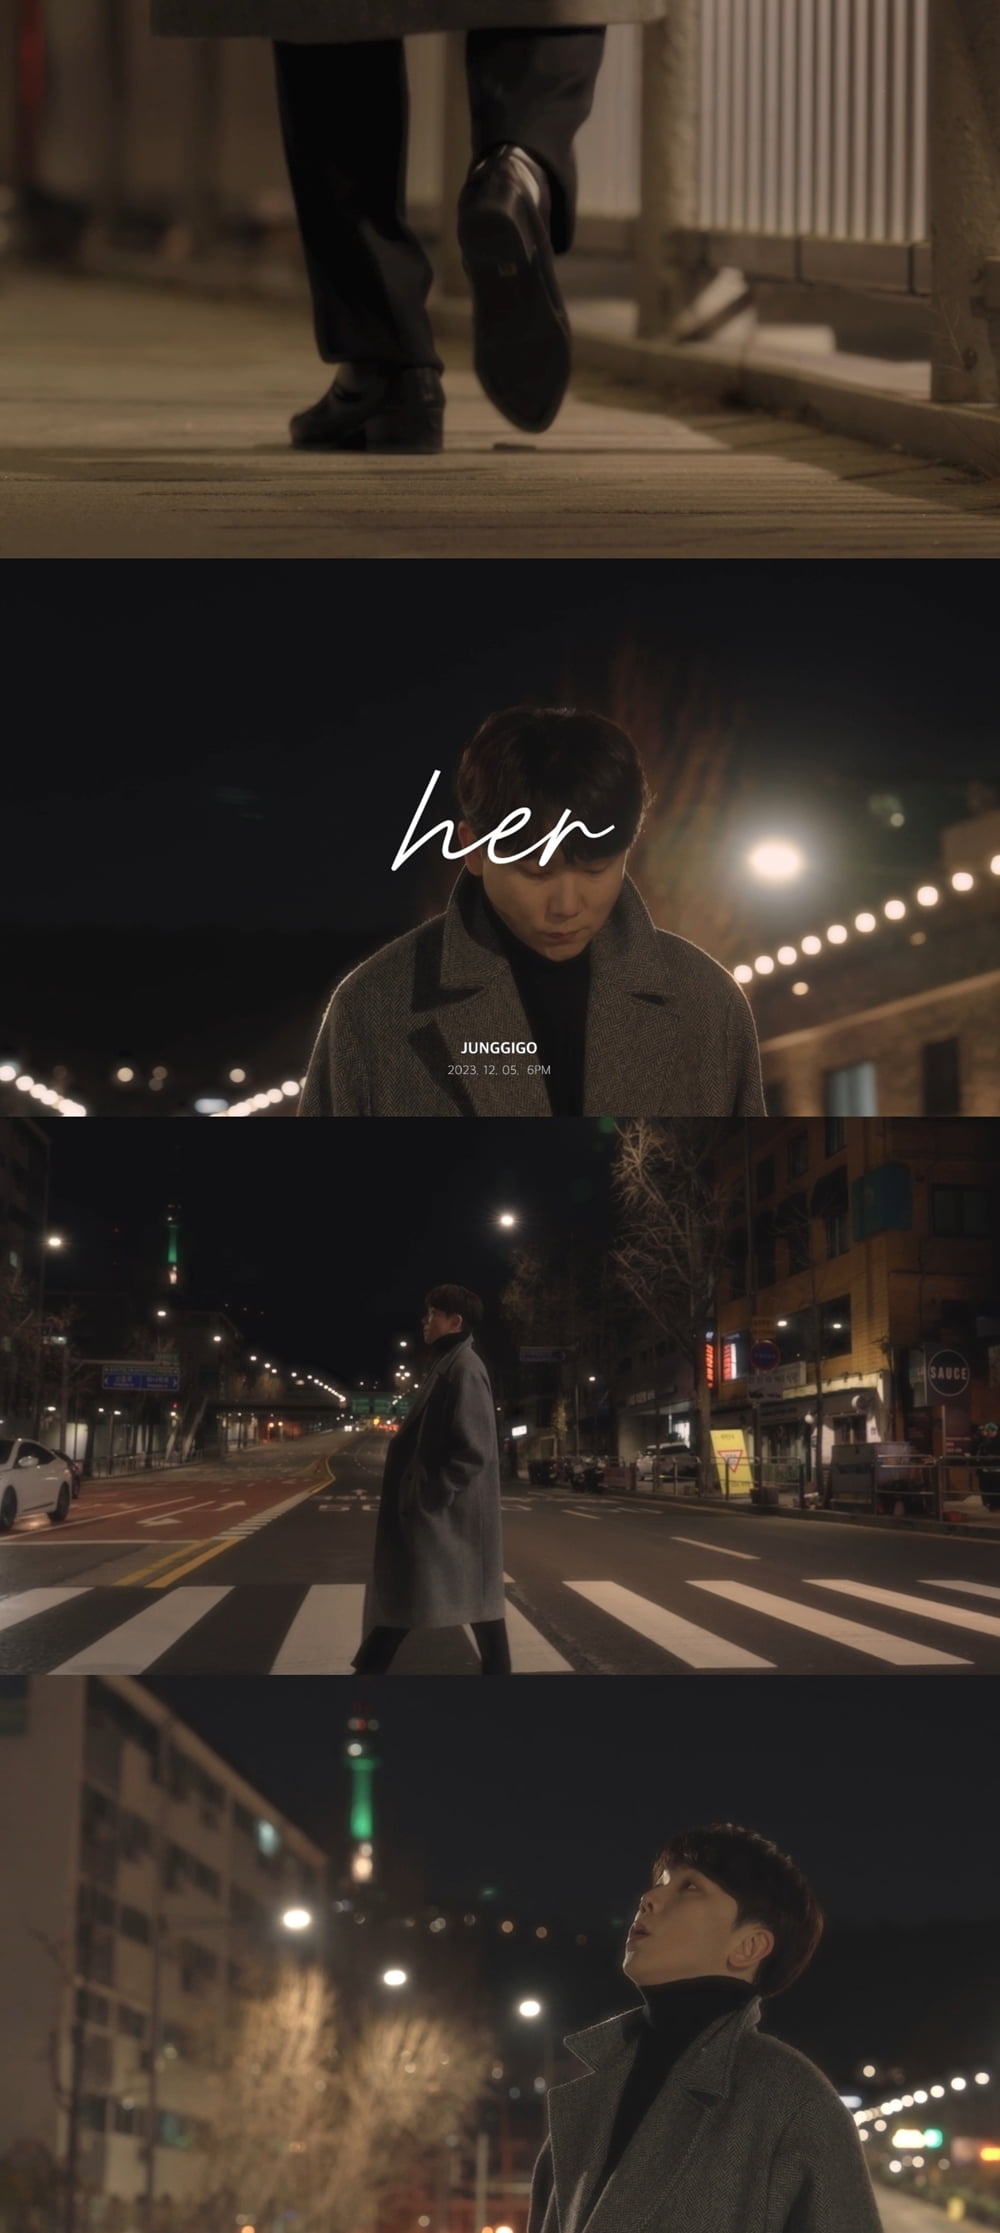 Singer Jeonggigo releases teaser video for new song 'her'